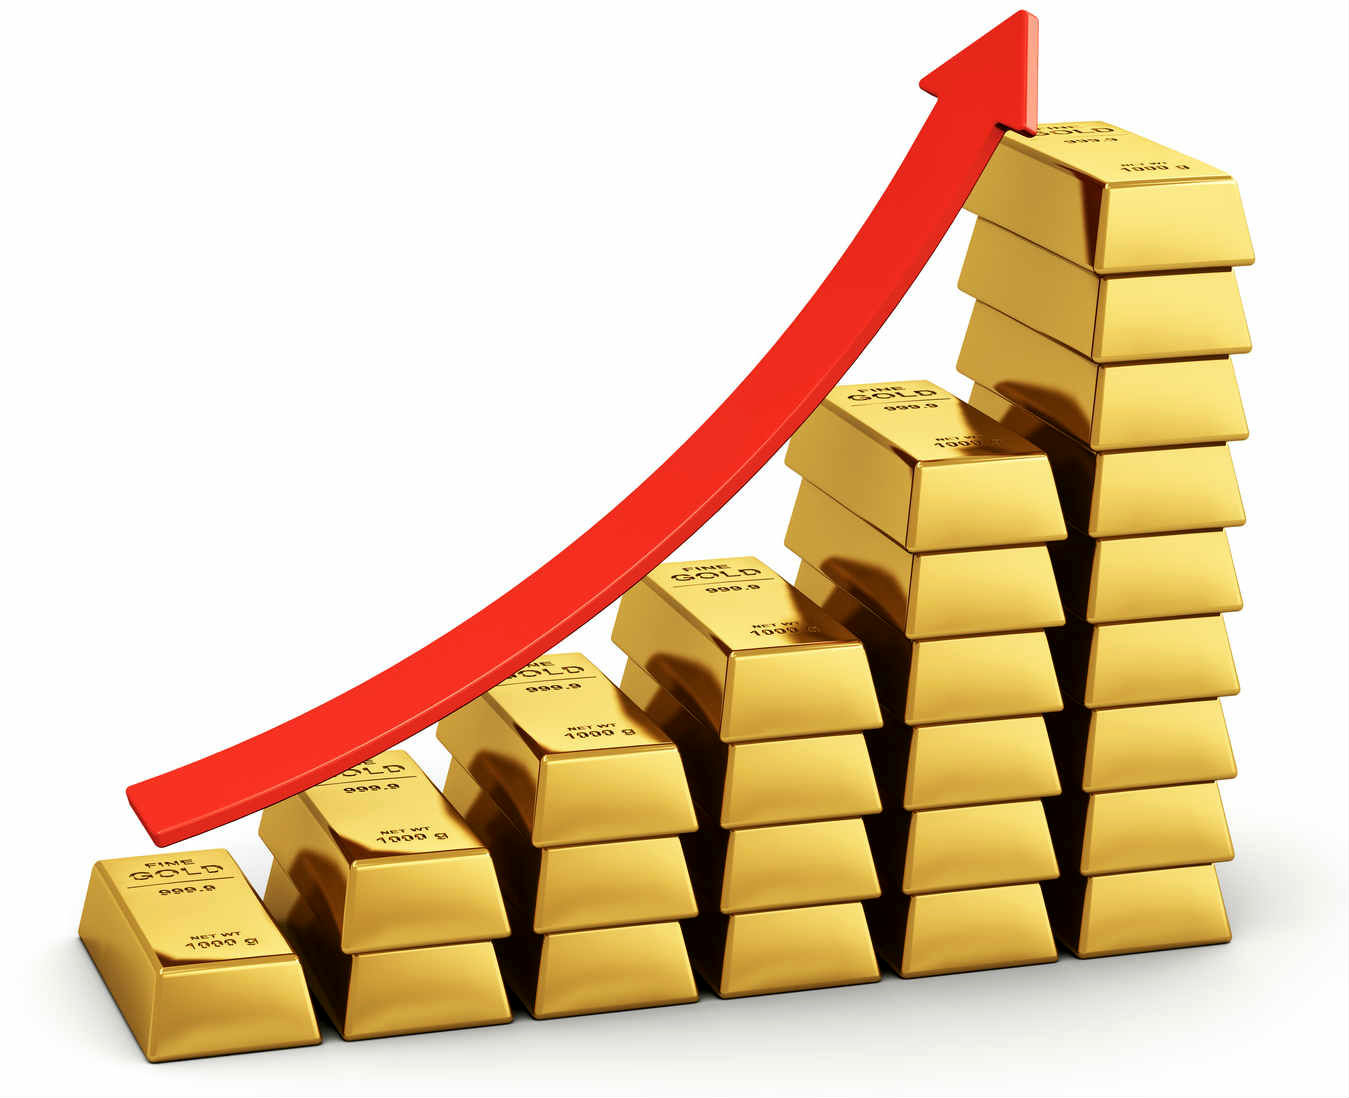 قیمت طلای جهانی در مسیر صعود